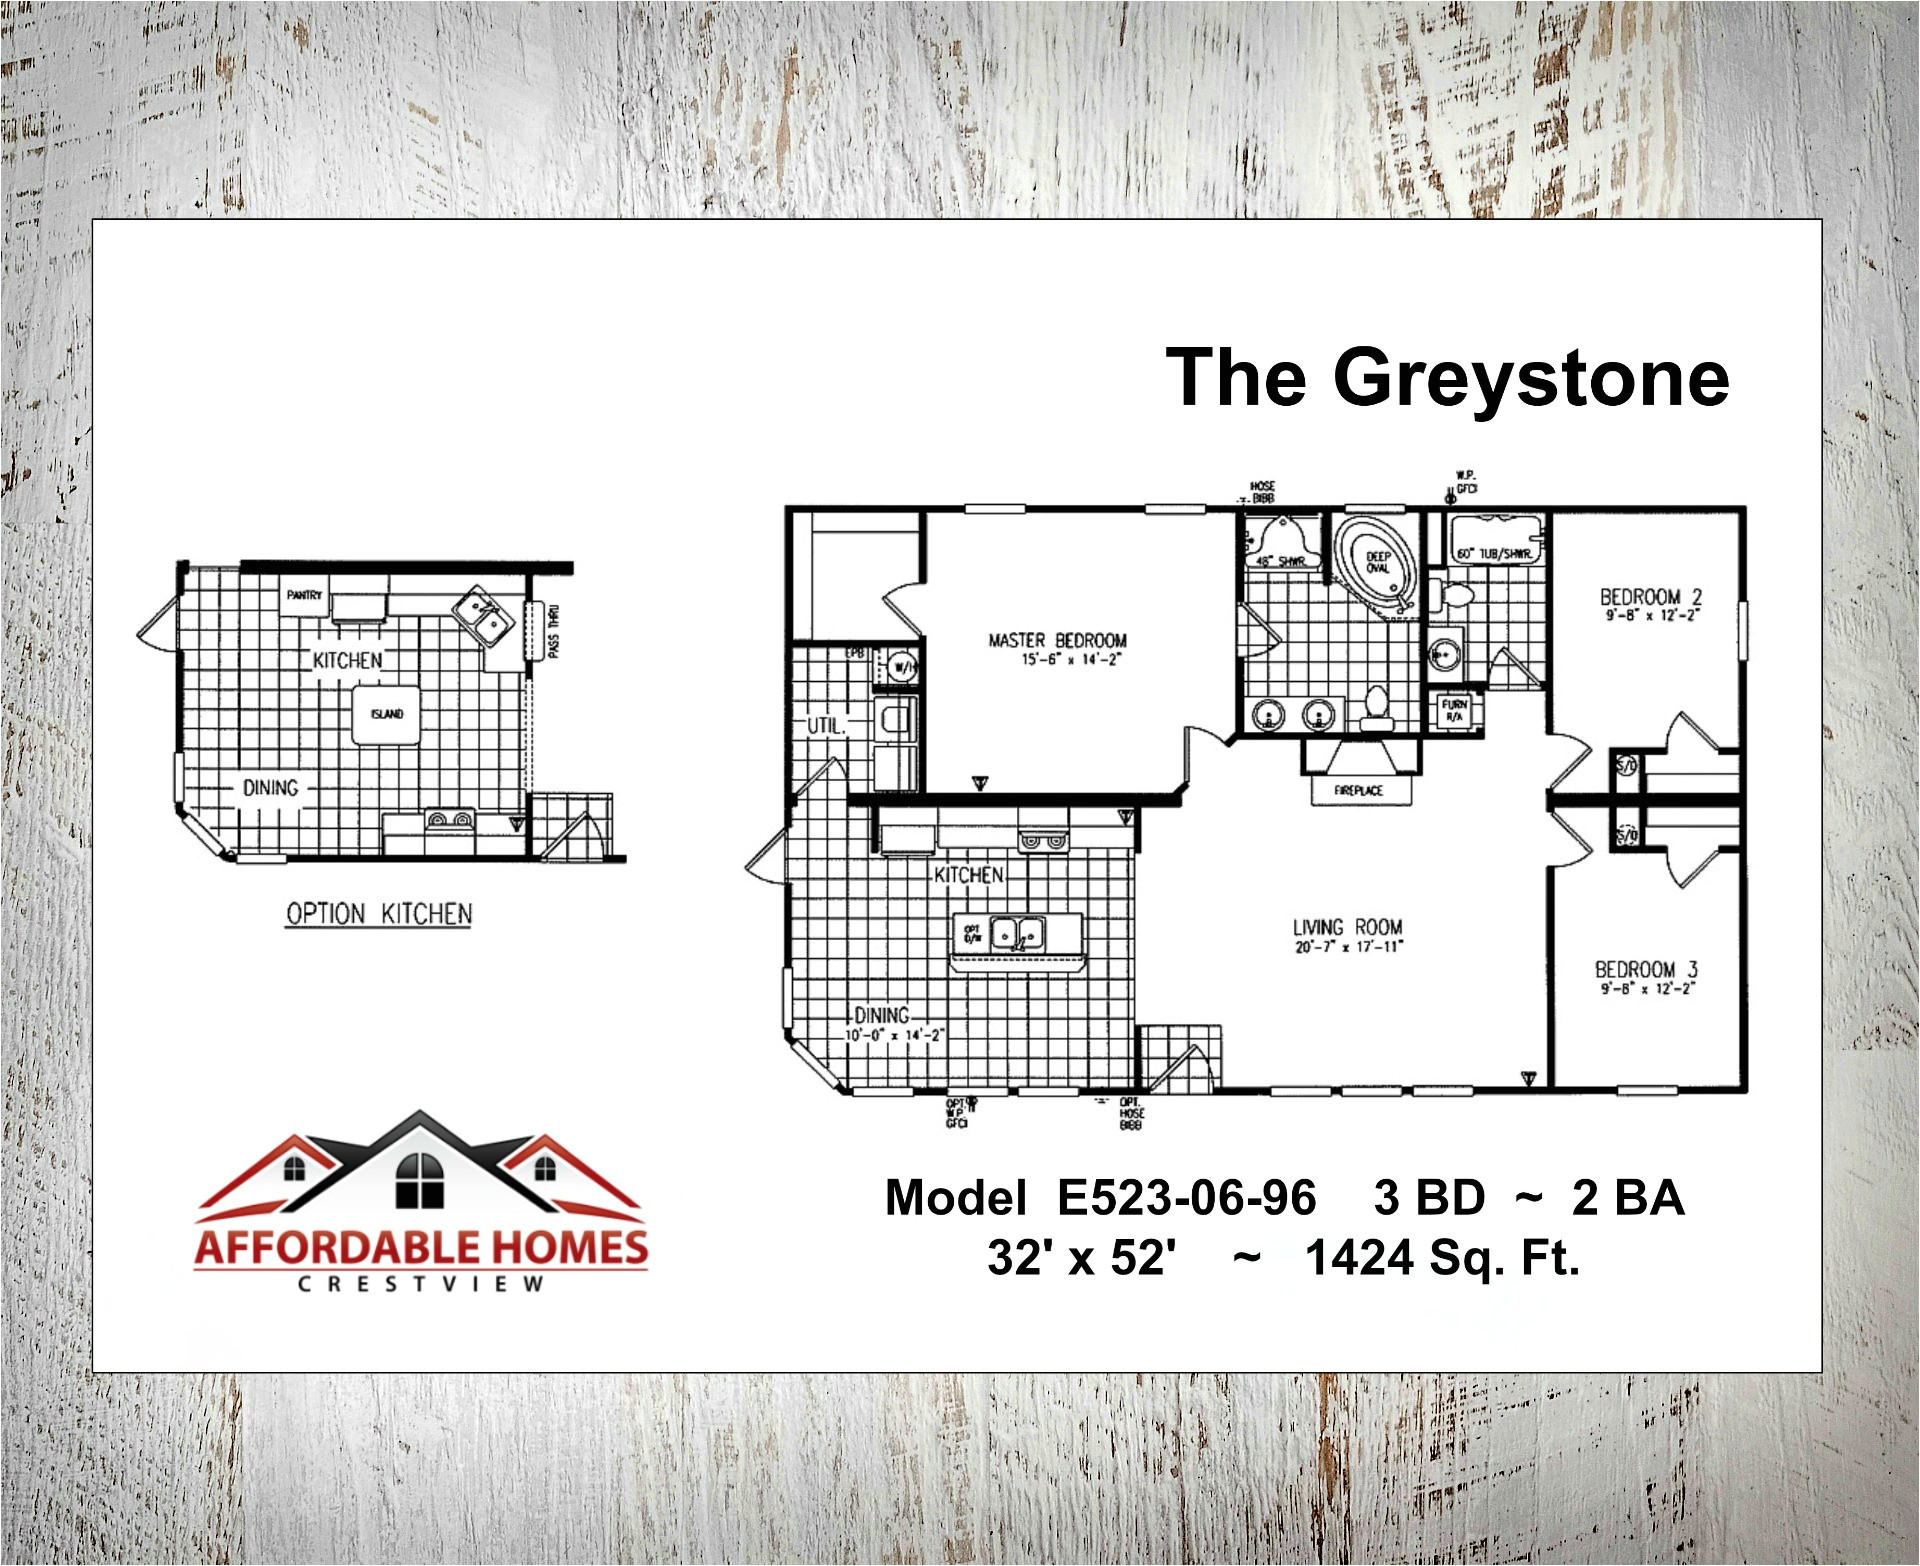 greystone floor plan features